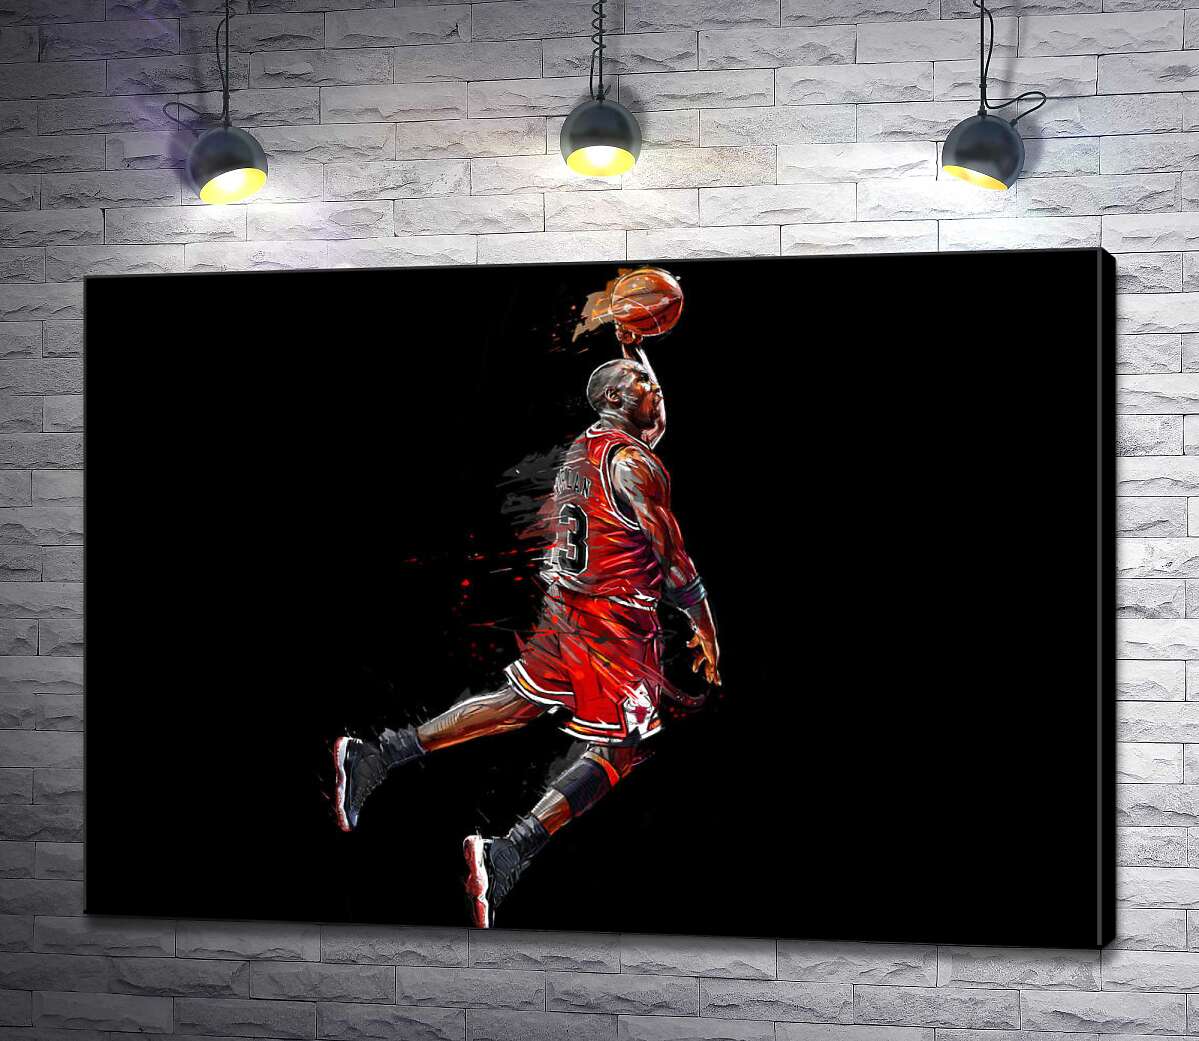 картина Легендарний баскетболіст, Майкл Джордан (Michael Jordan), в стрибку